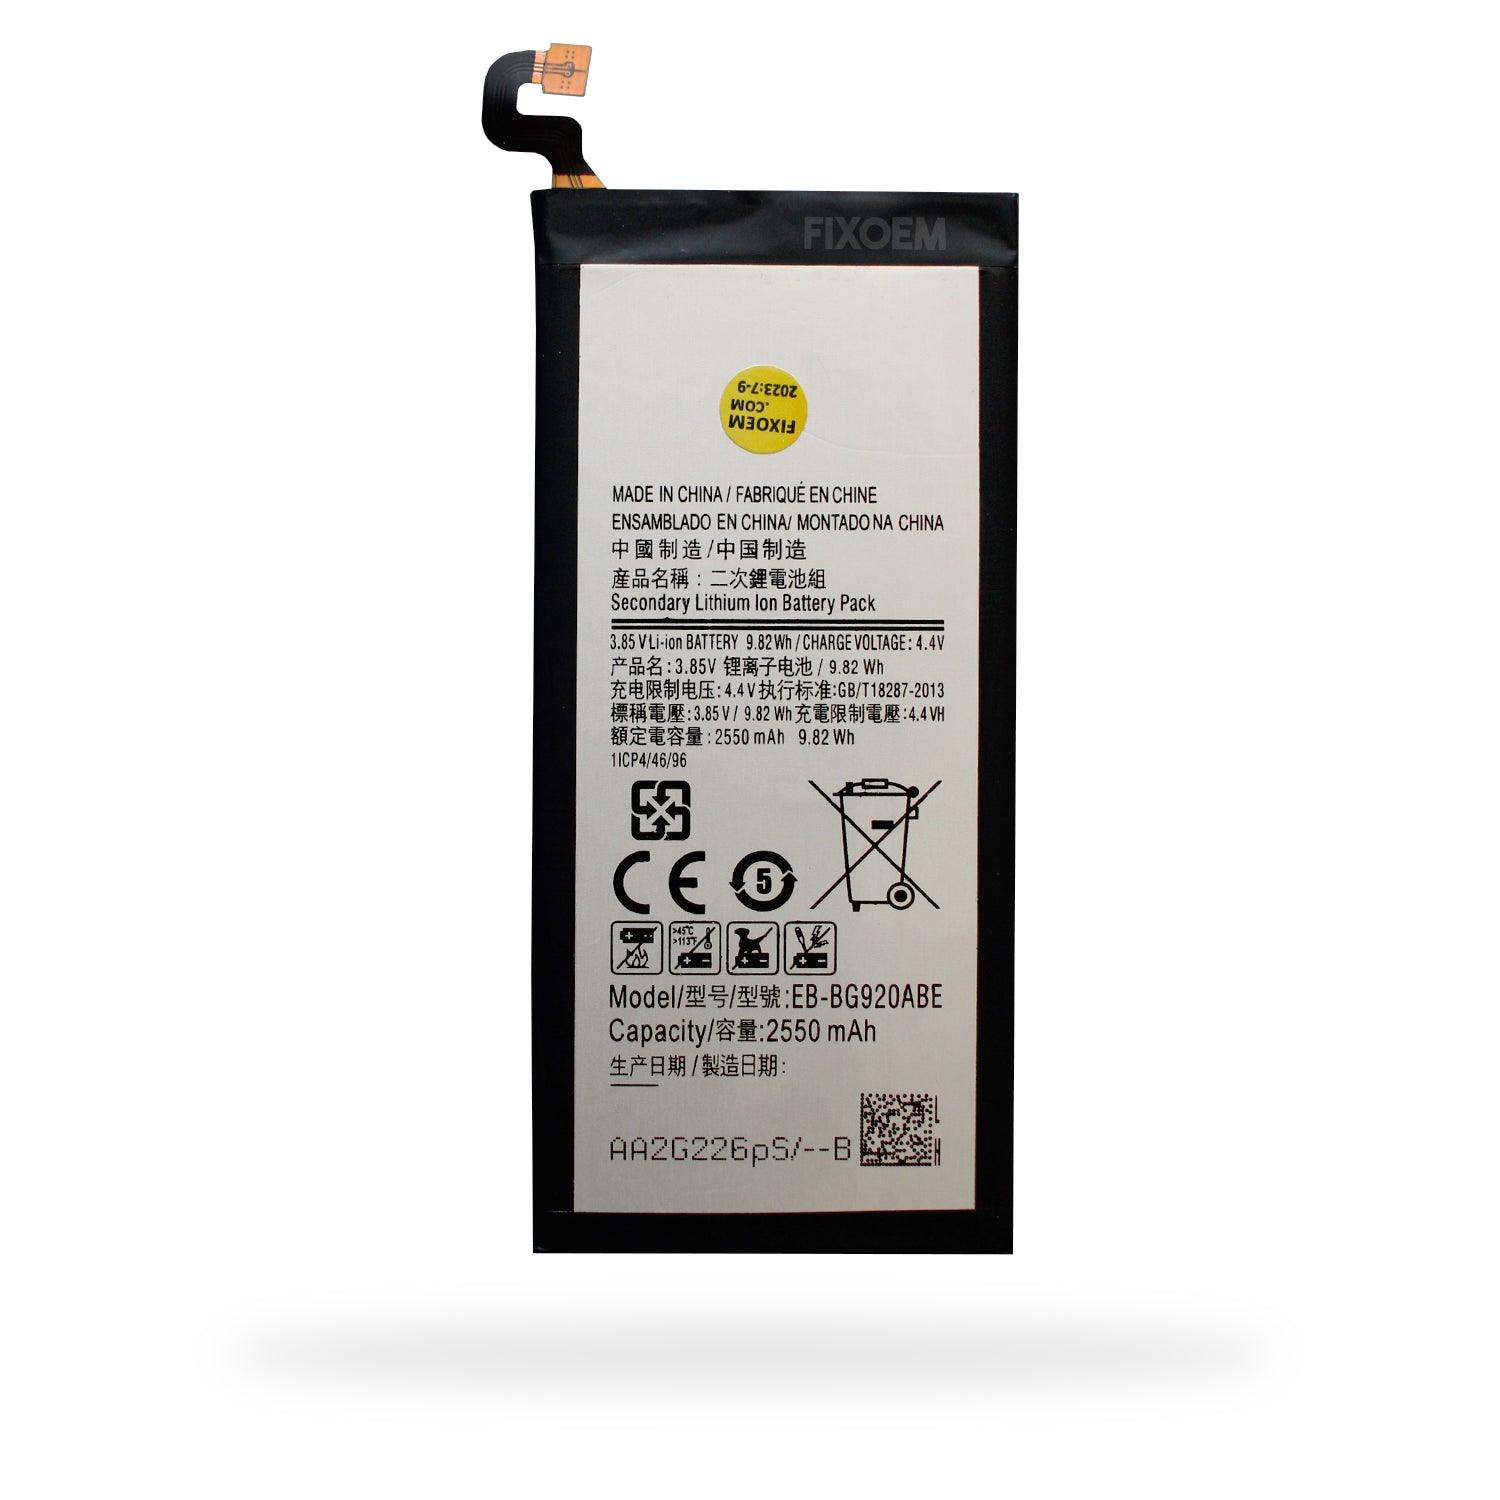 Bateria Samsung S6 Flat Sm-G920I Eb-Bg920Abe a solo $ 120.00 Refaccion y puestos celulares, refurbish y microelectronica.- FixOEM